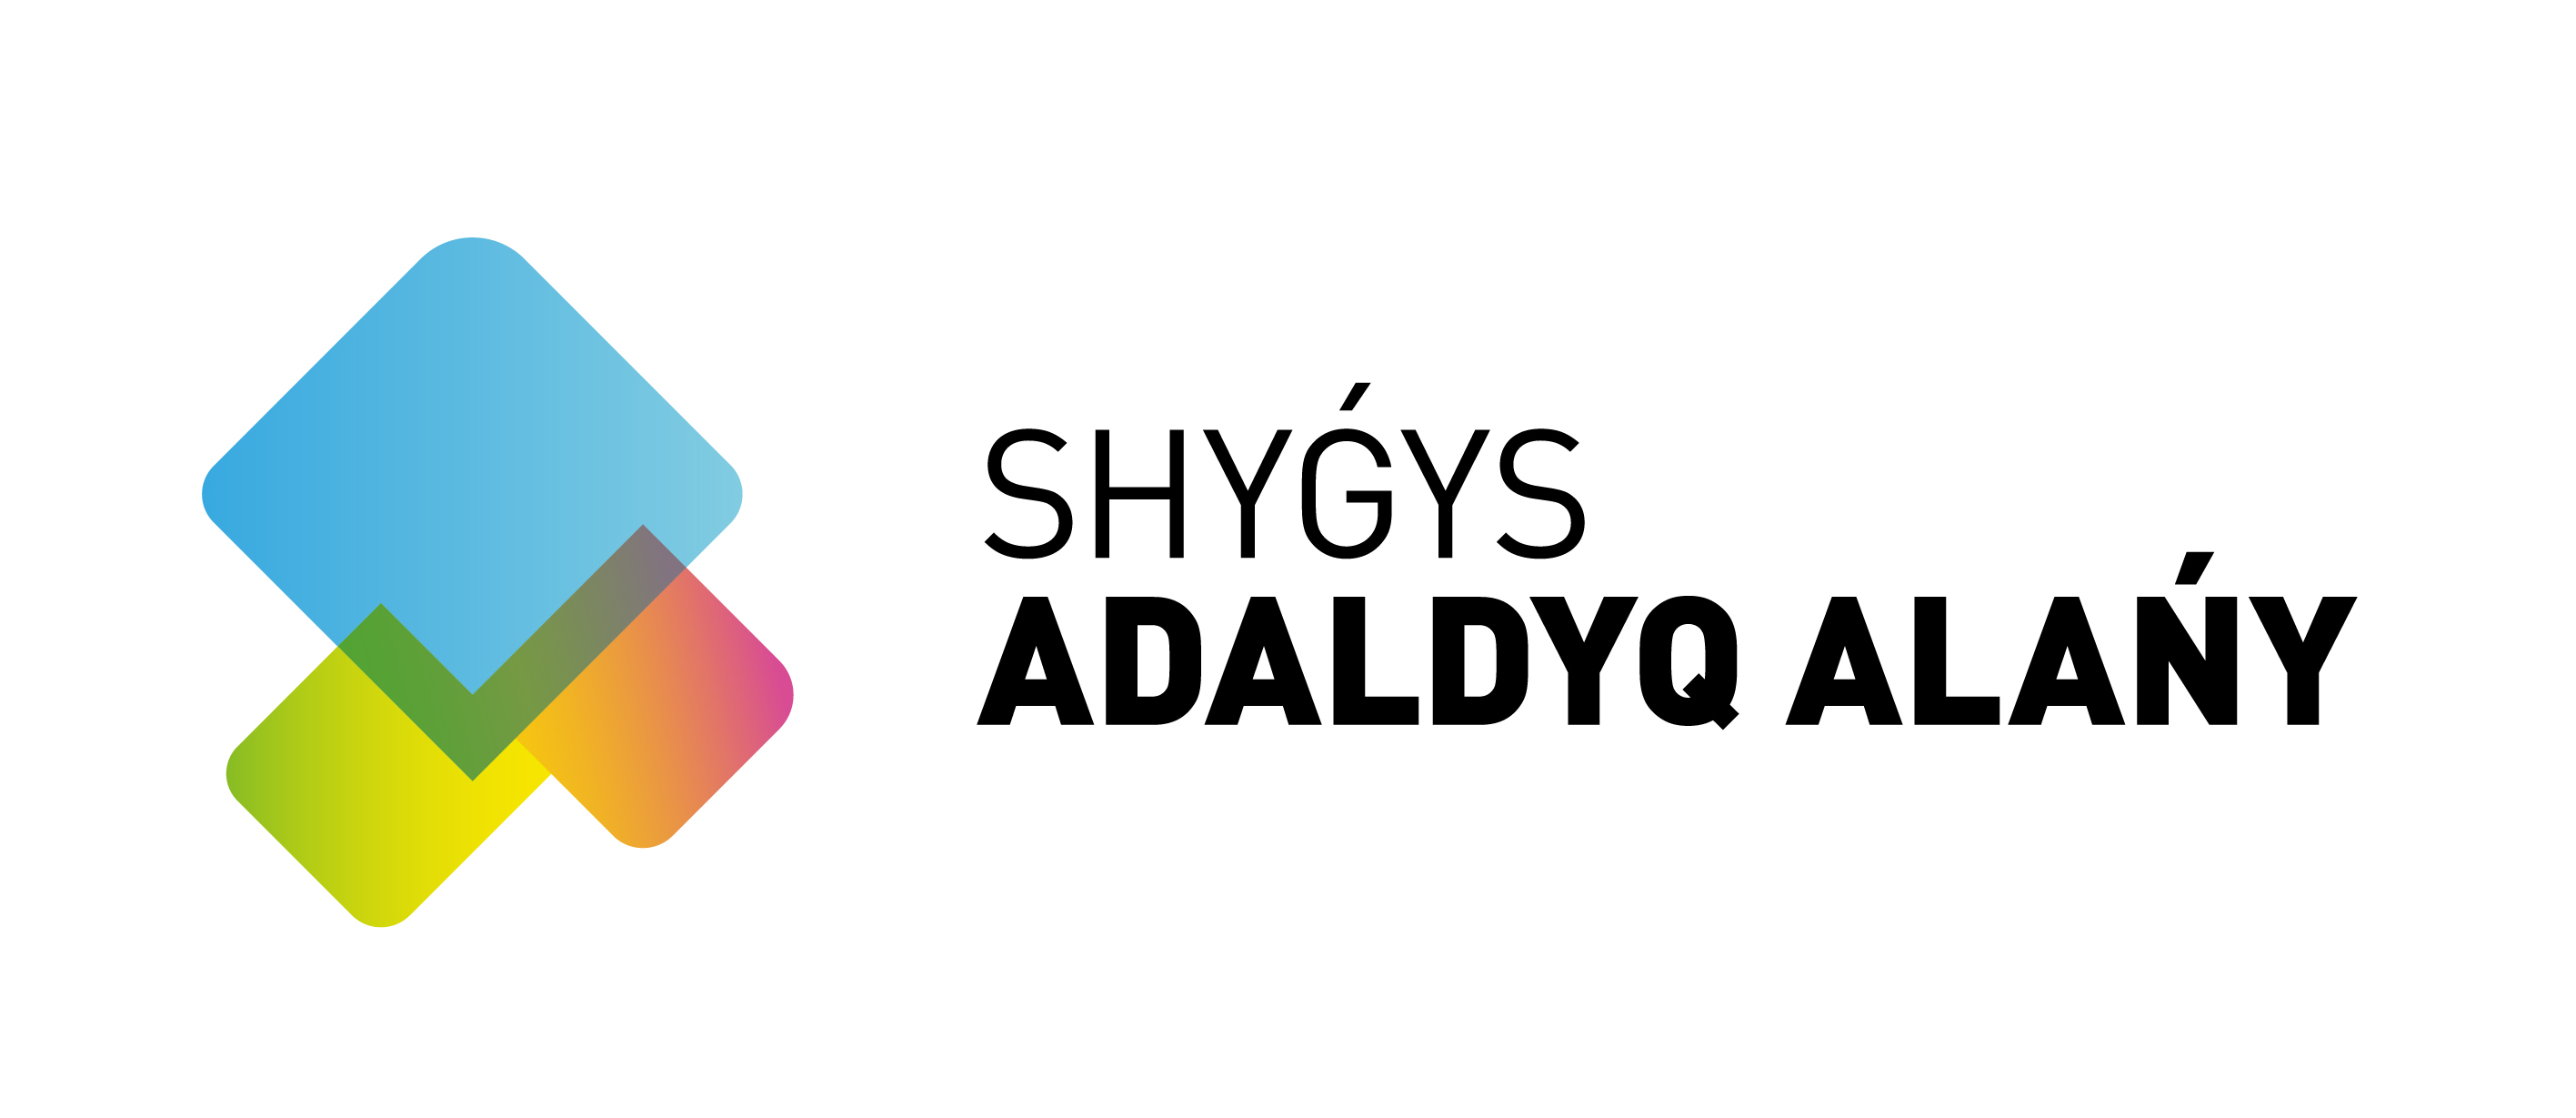 Shygys - Adaldyq Alany